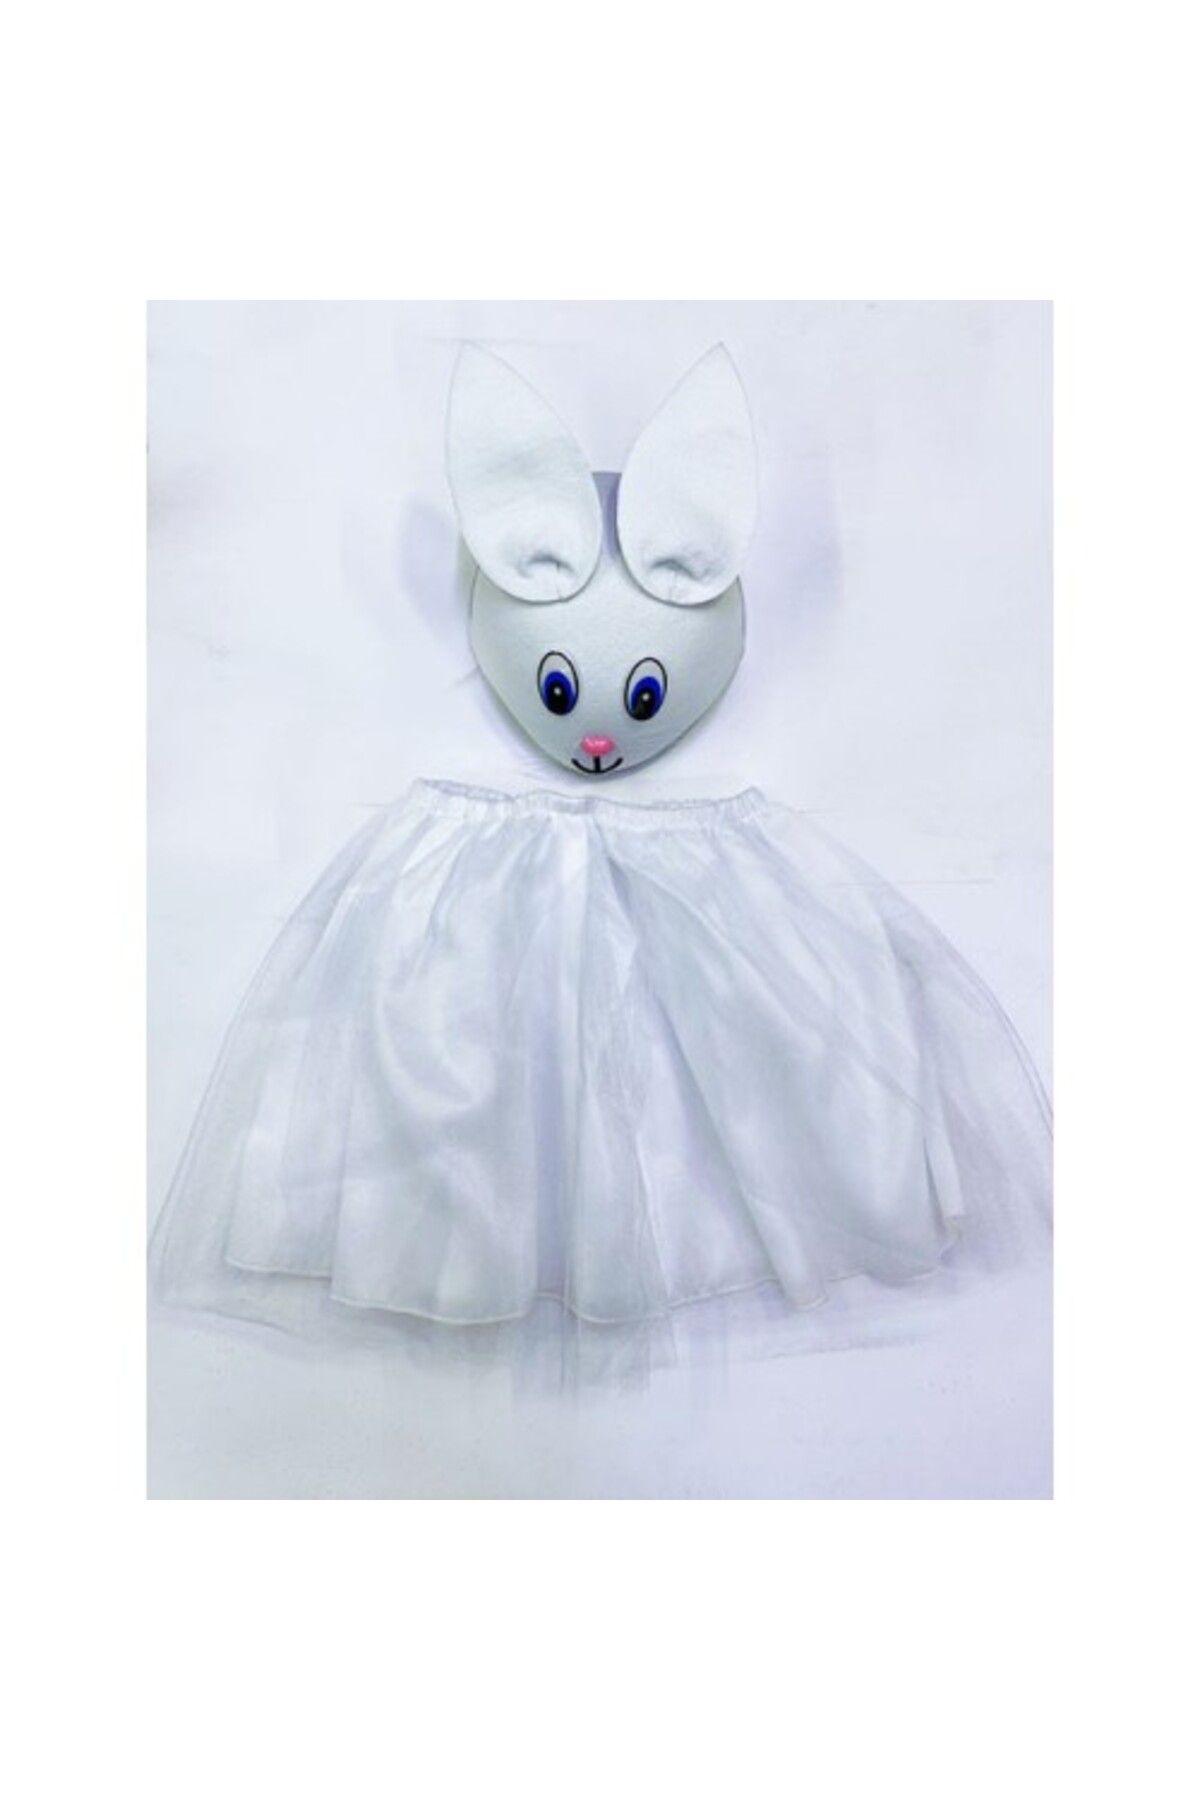 KRGZ 2020 Tavşan Gösteri Kostümü Çocuk